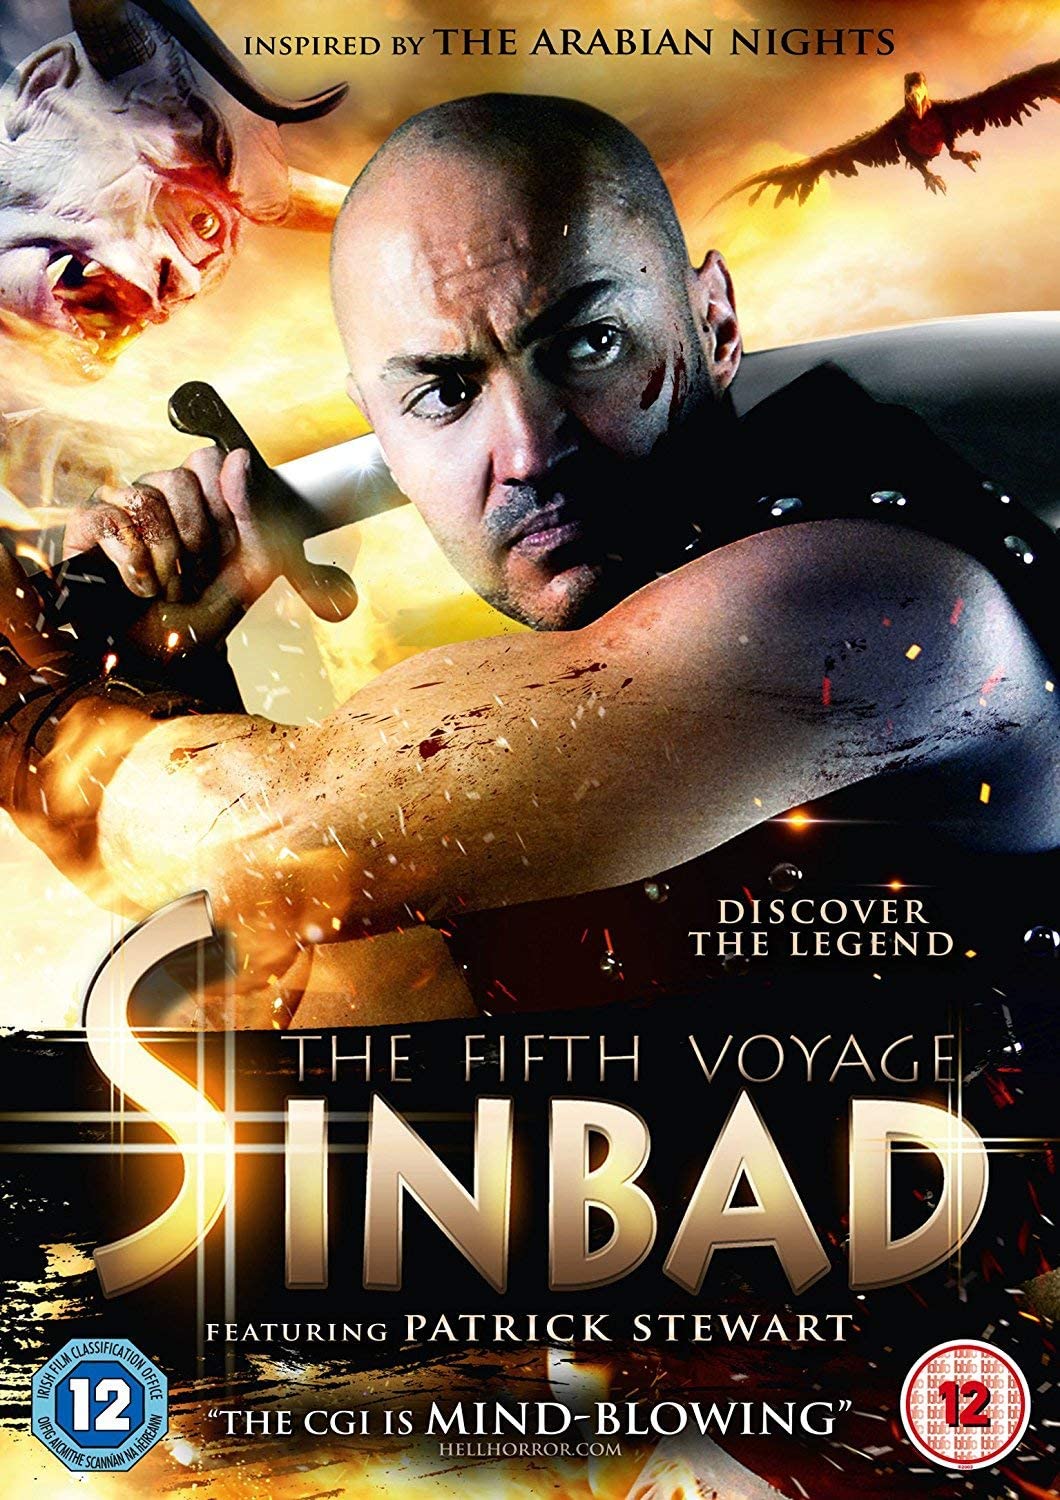 Sinbad The Fifth Voyage - Fantasy/Adventure [DVD]